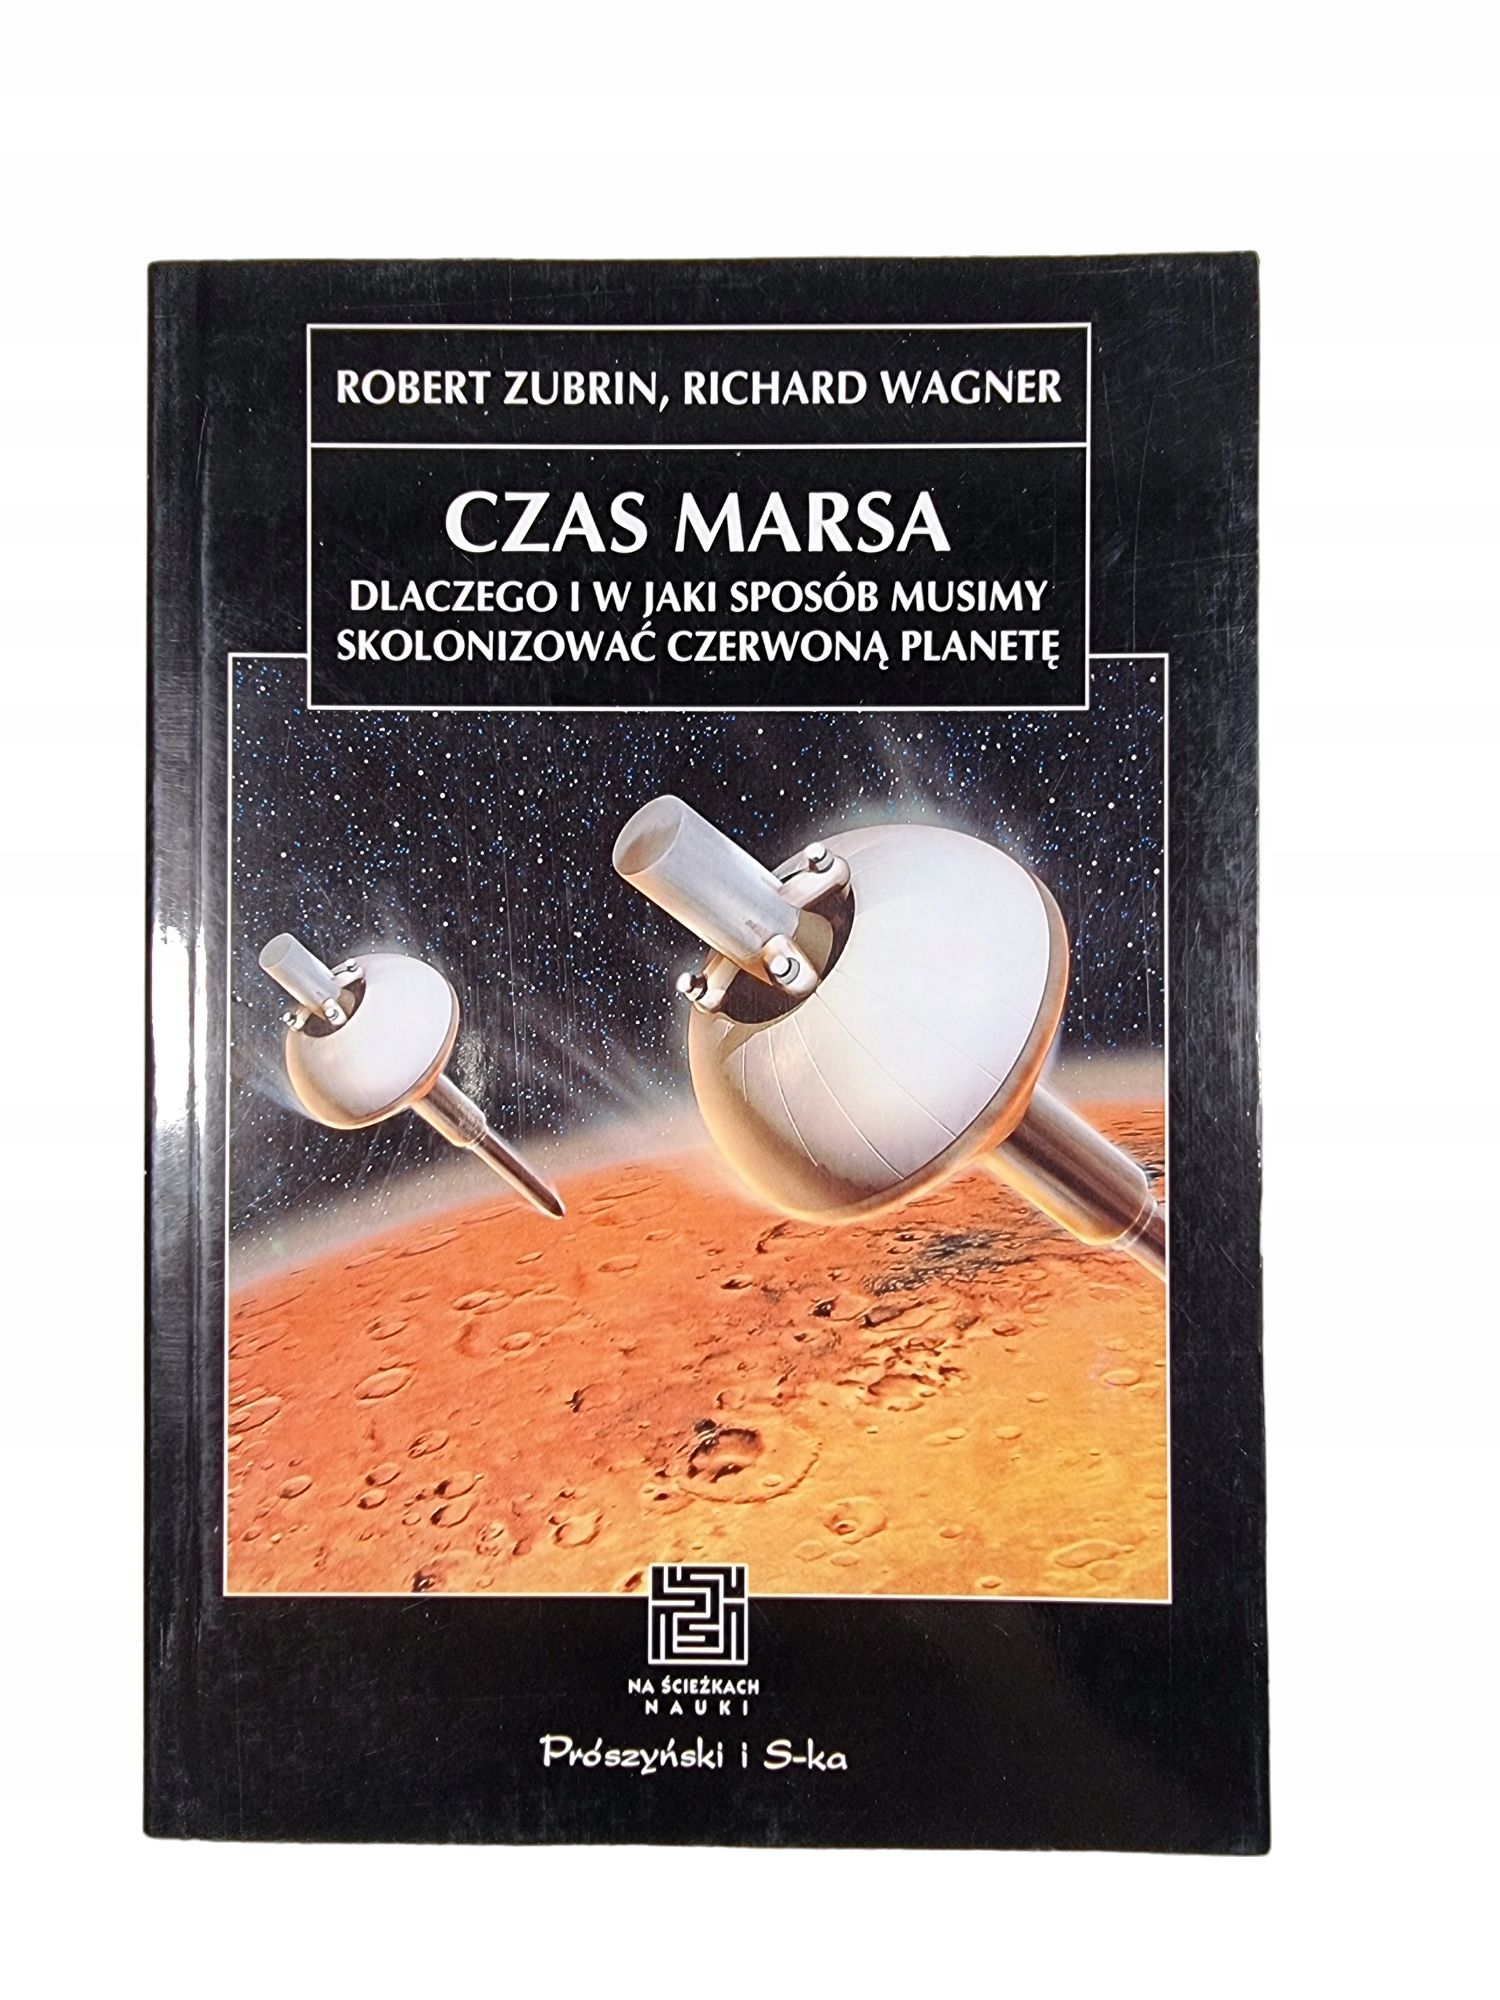 Czas Marsa / Robert Zubrin / Richard Wagner